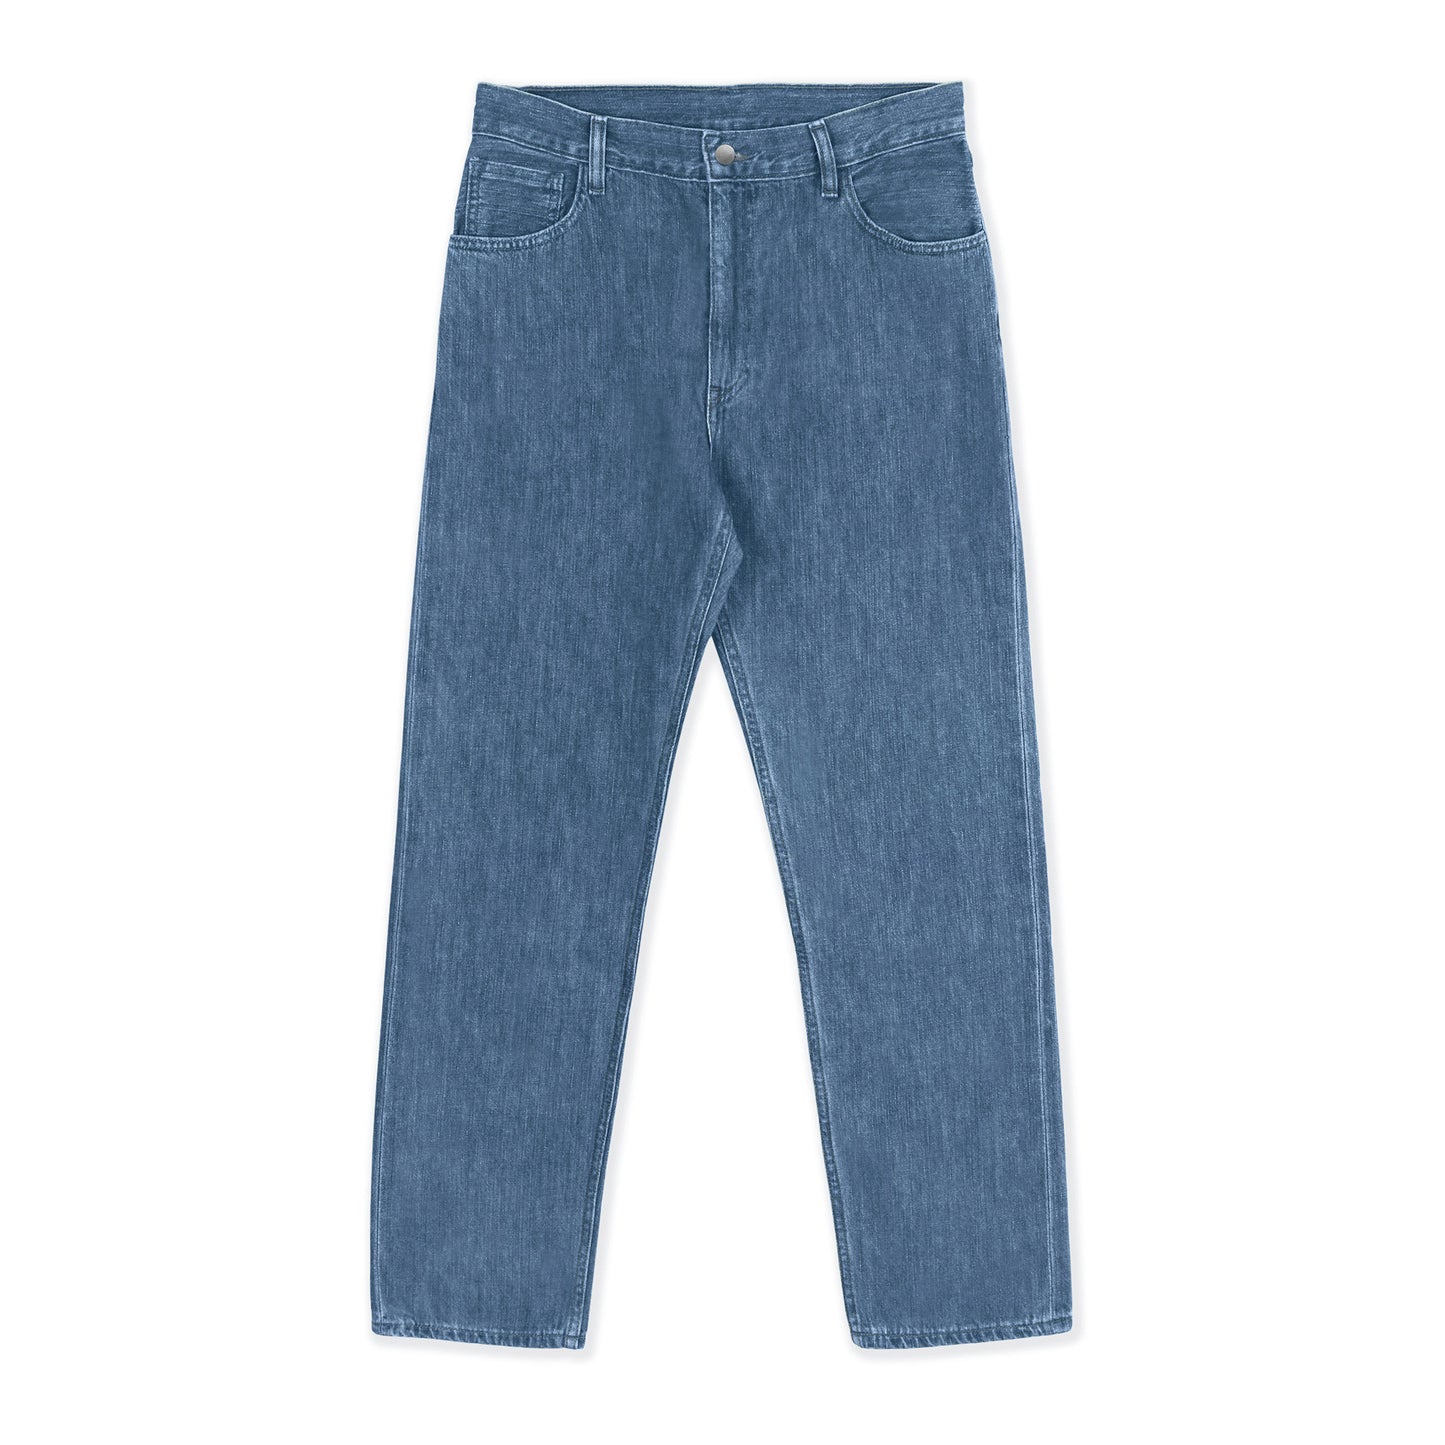 Standard Fit Organic Jean in Eco Stone Wash Selvedge Denim – non